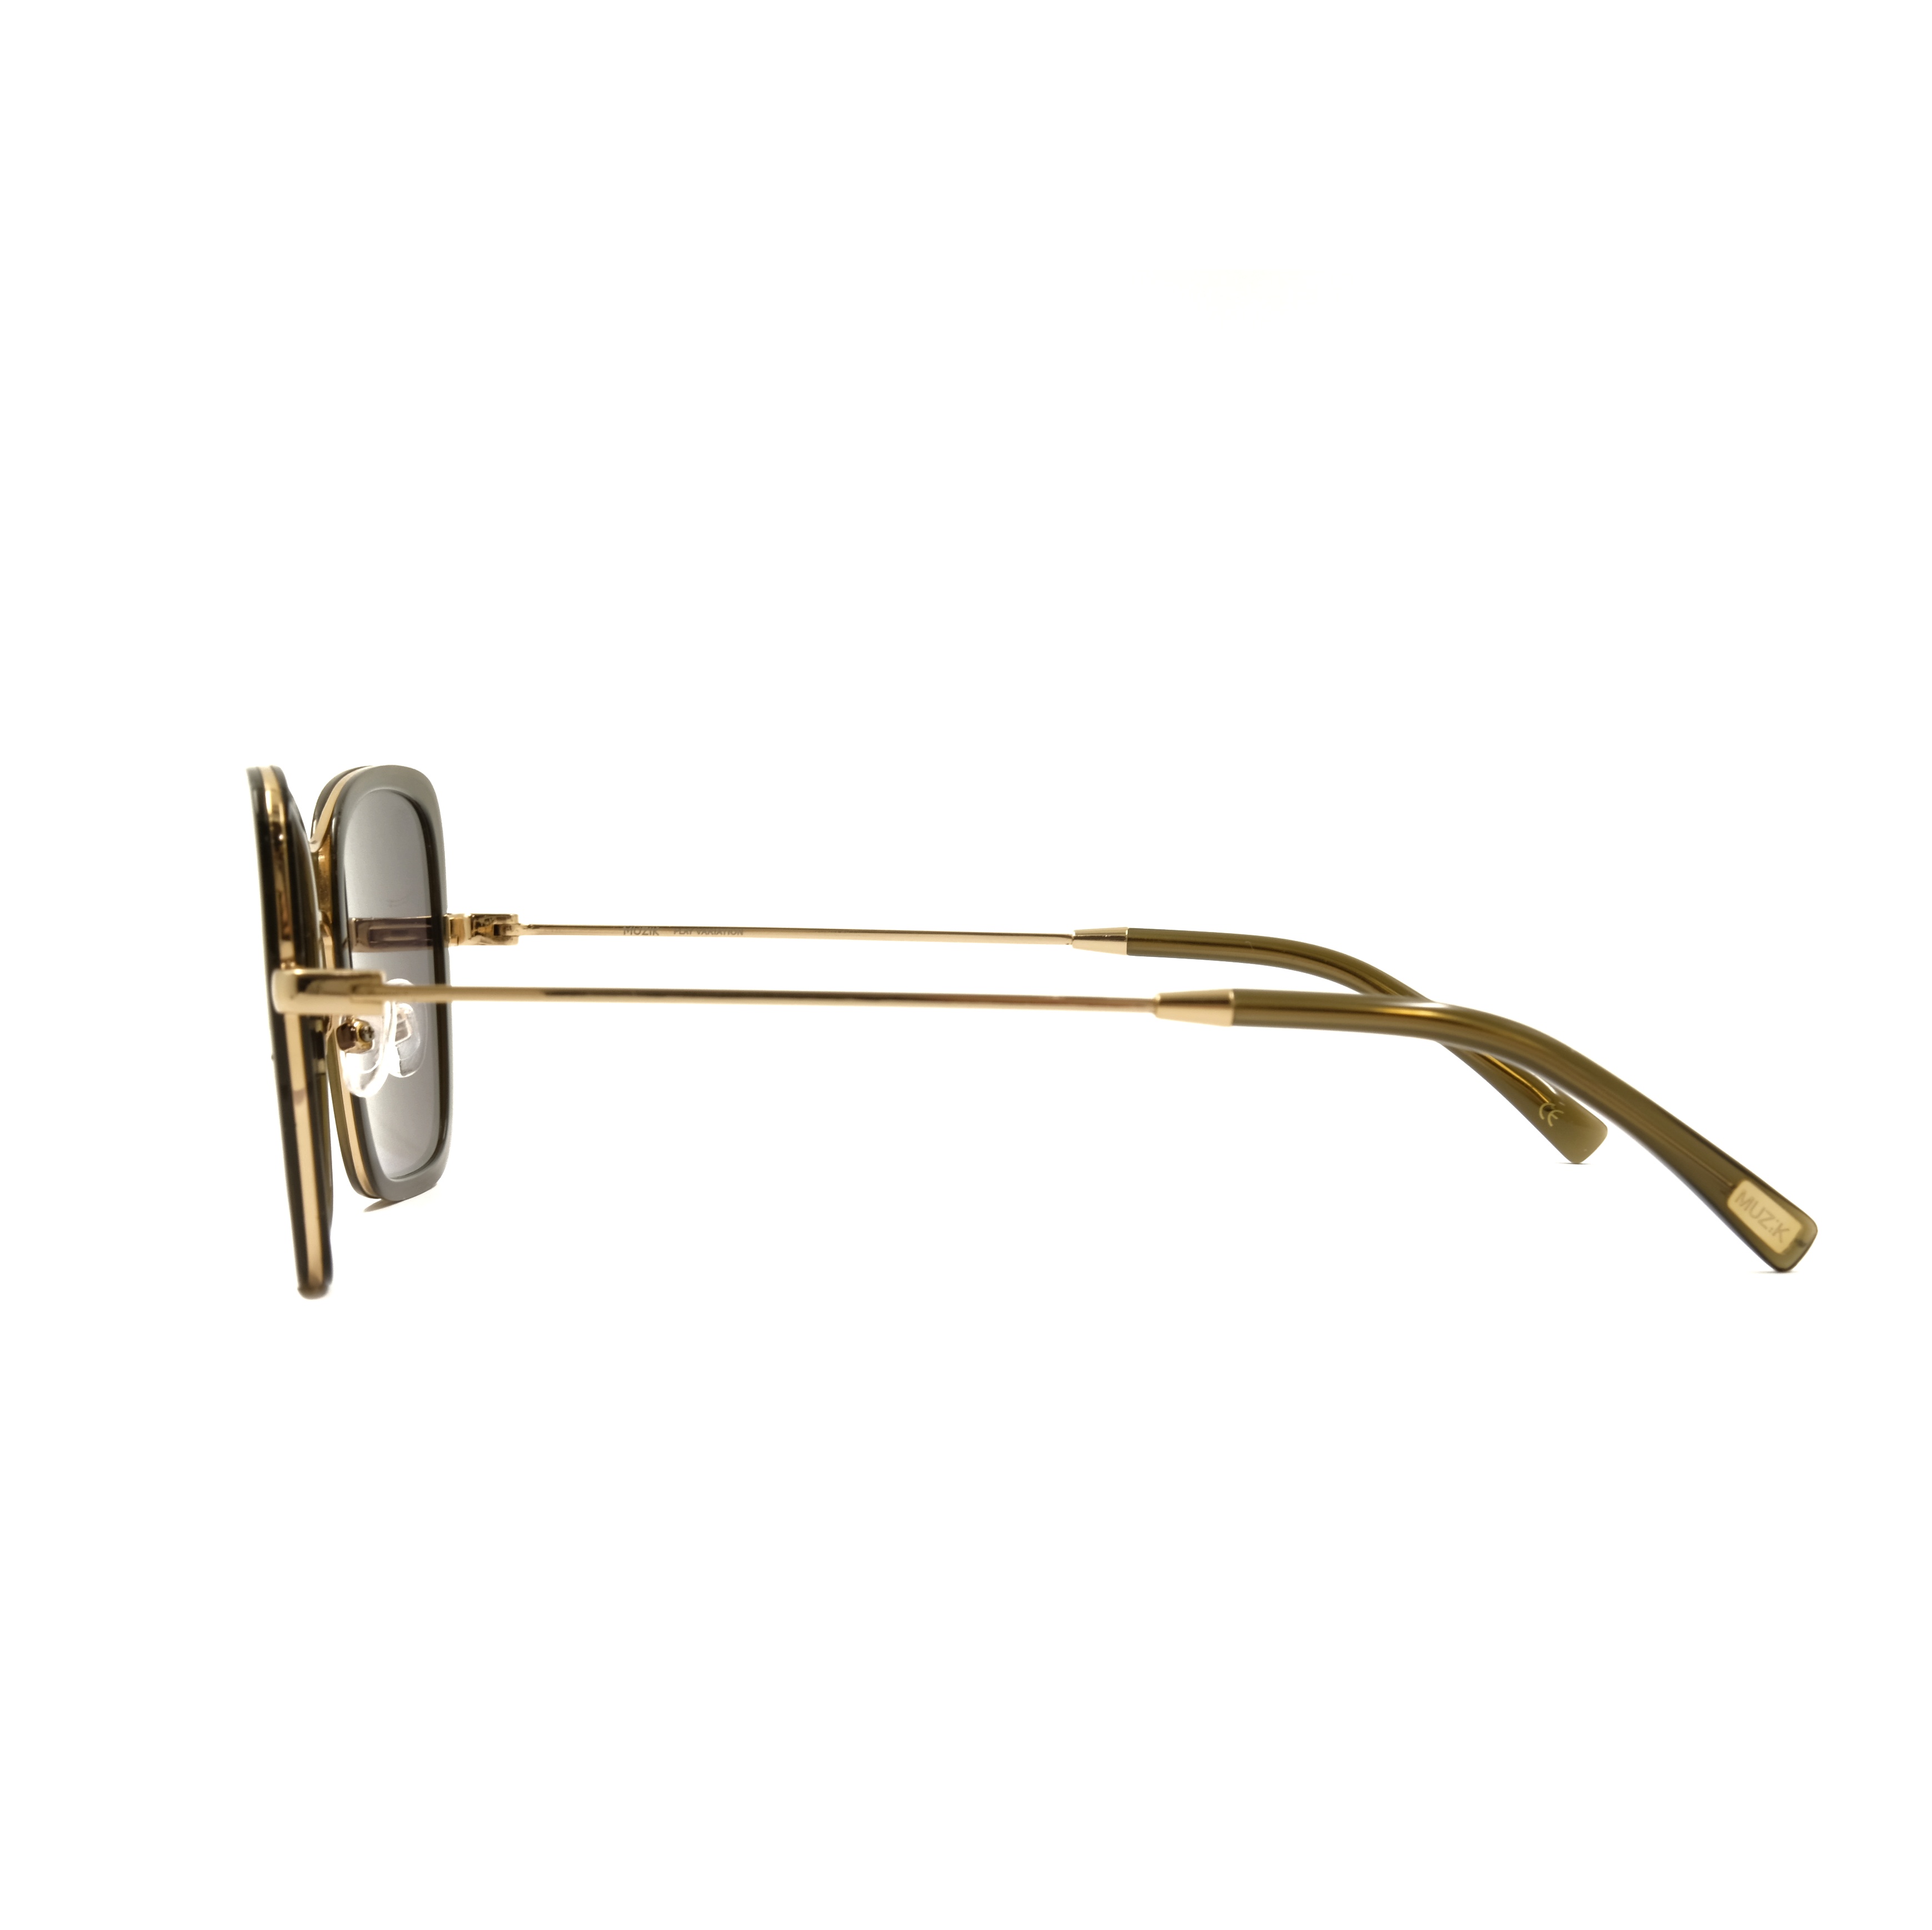 Proveedor de gafas de sol a medida Gafas de sol cuadradas con montura de acetato de oro de China Gafas Gensun Sunperia